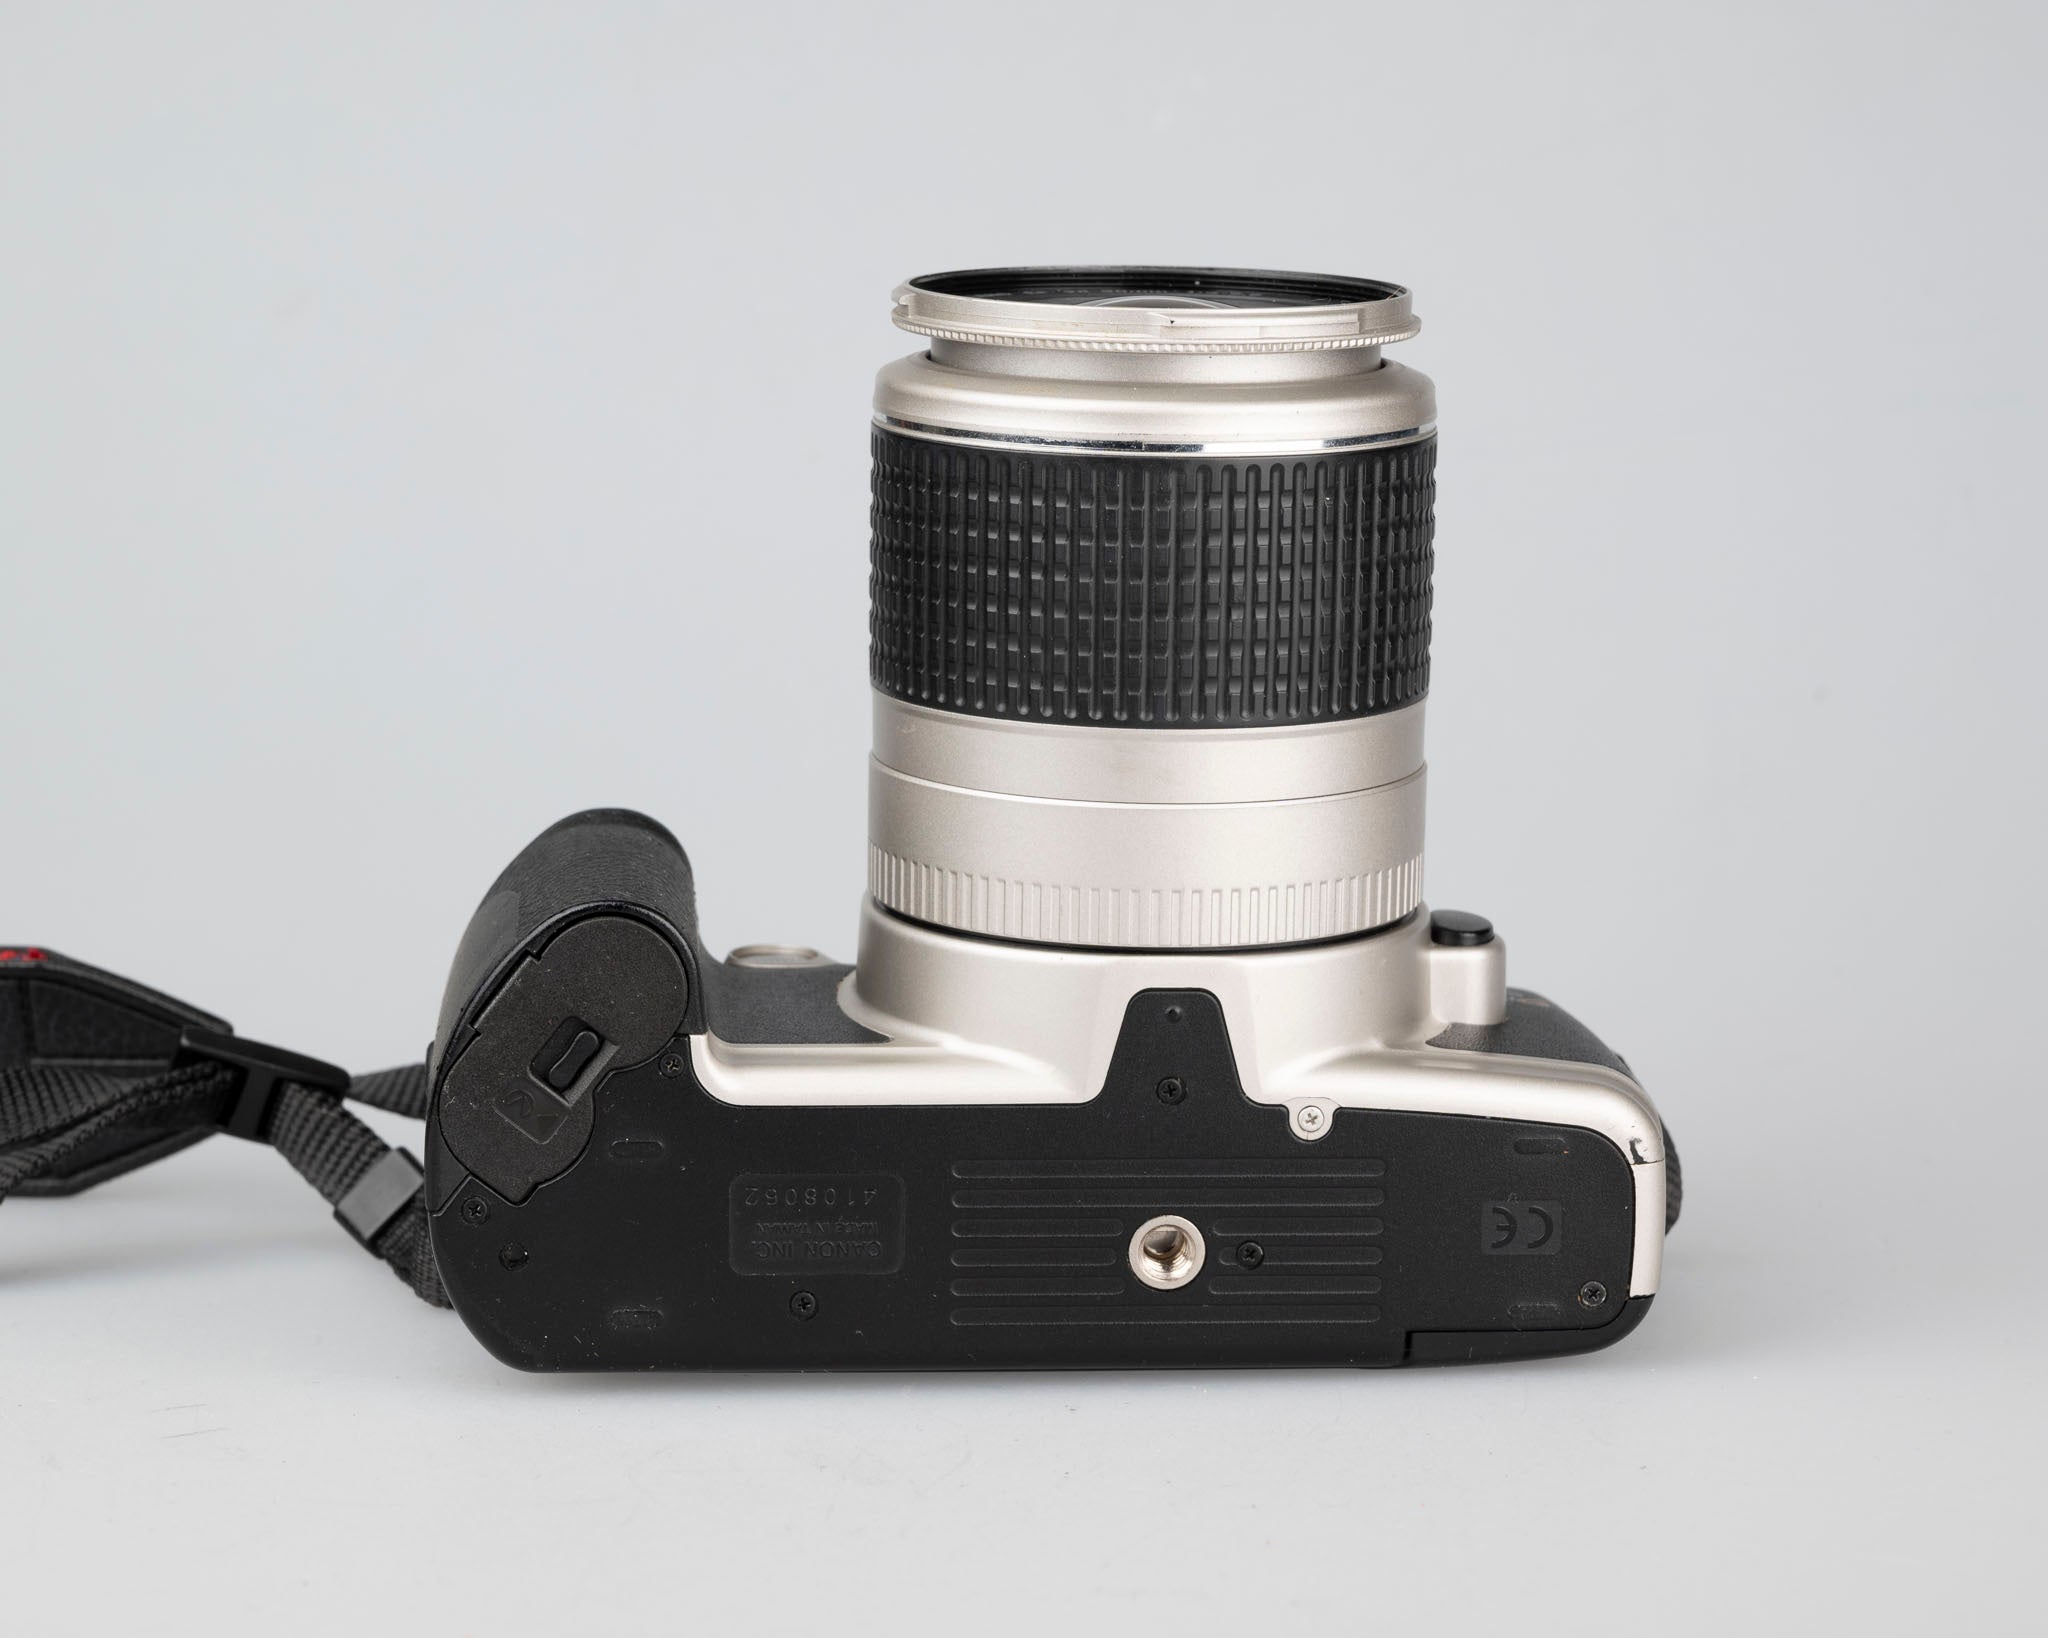 Canon EOS Rebel G 35mm film SLR w/ EF 28-90mm lens (serial 4108062